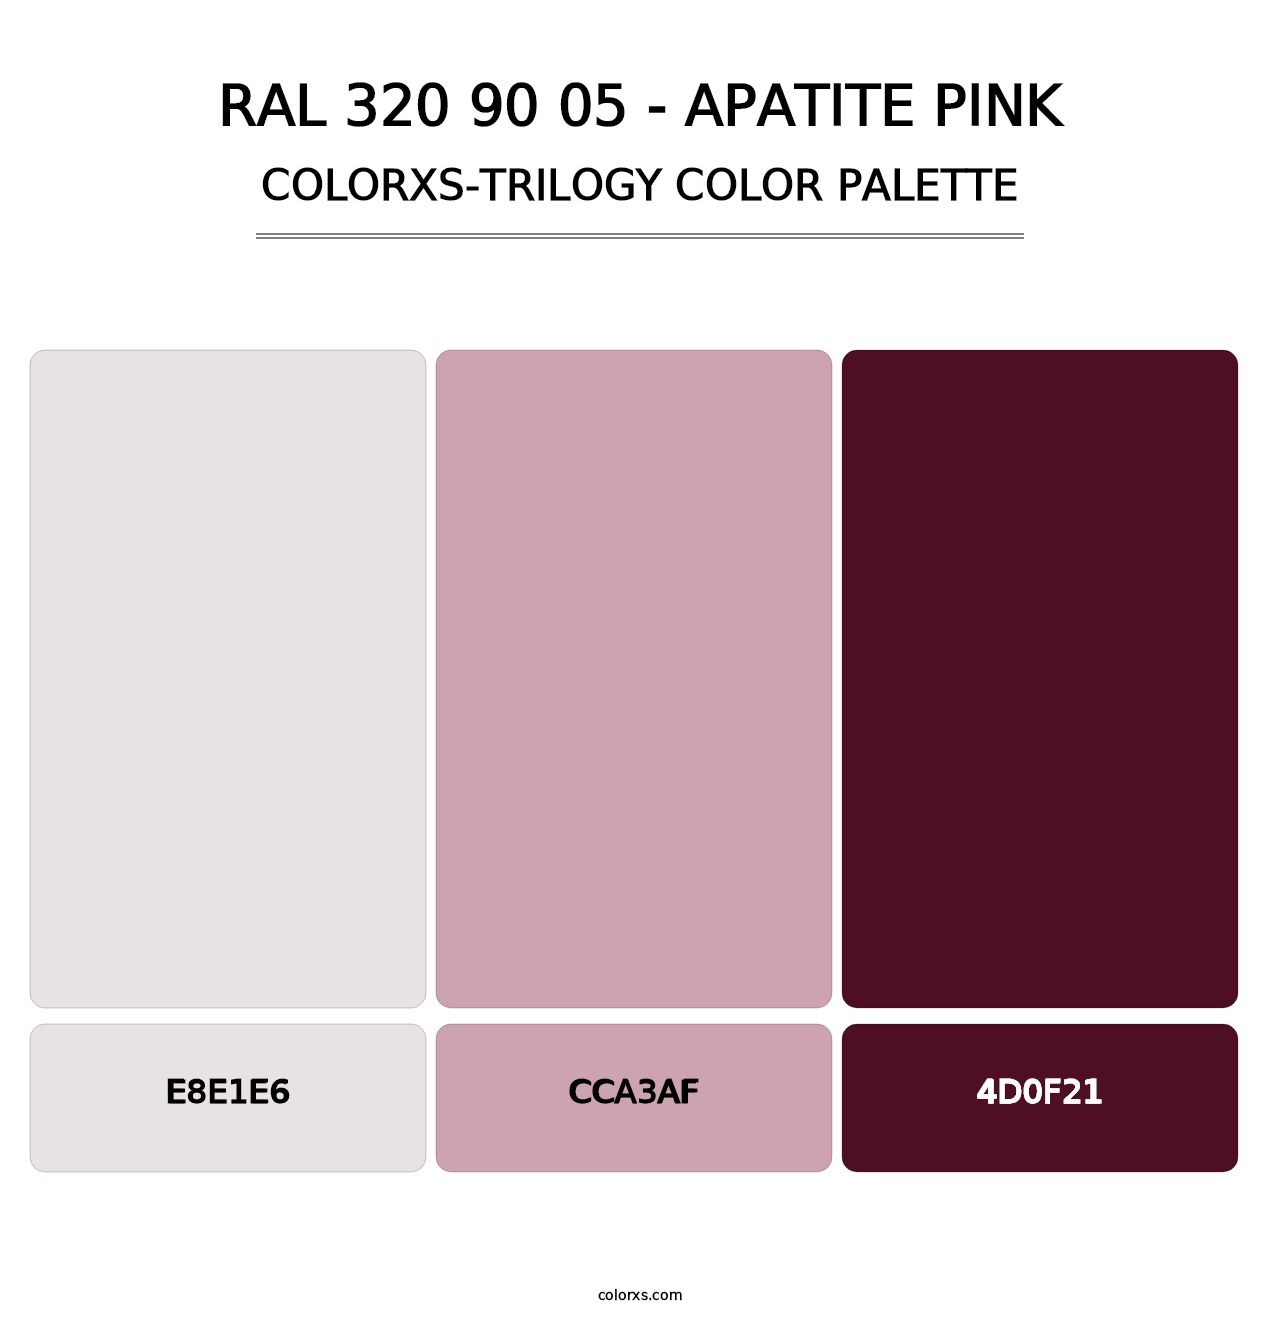 RAL 320 90 05 - Apatite Pink - Colorxs Trilogy Palette